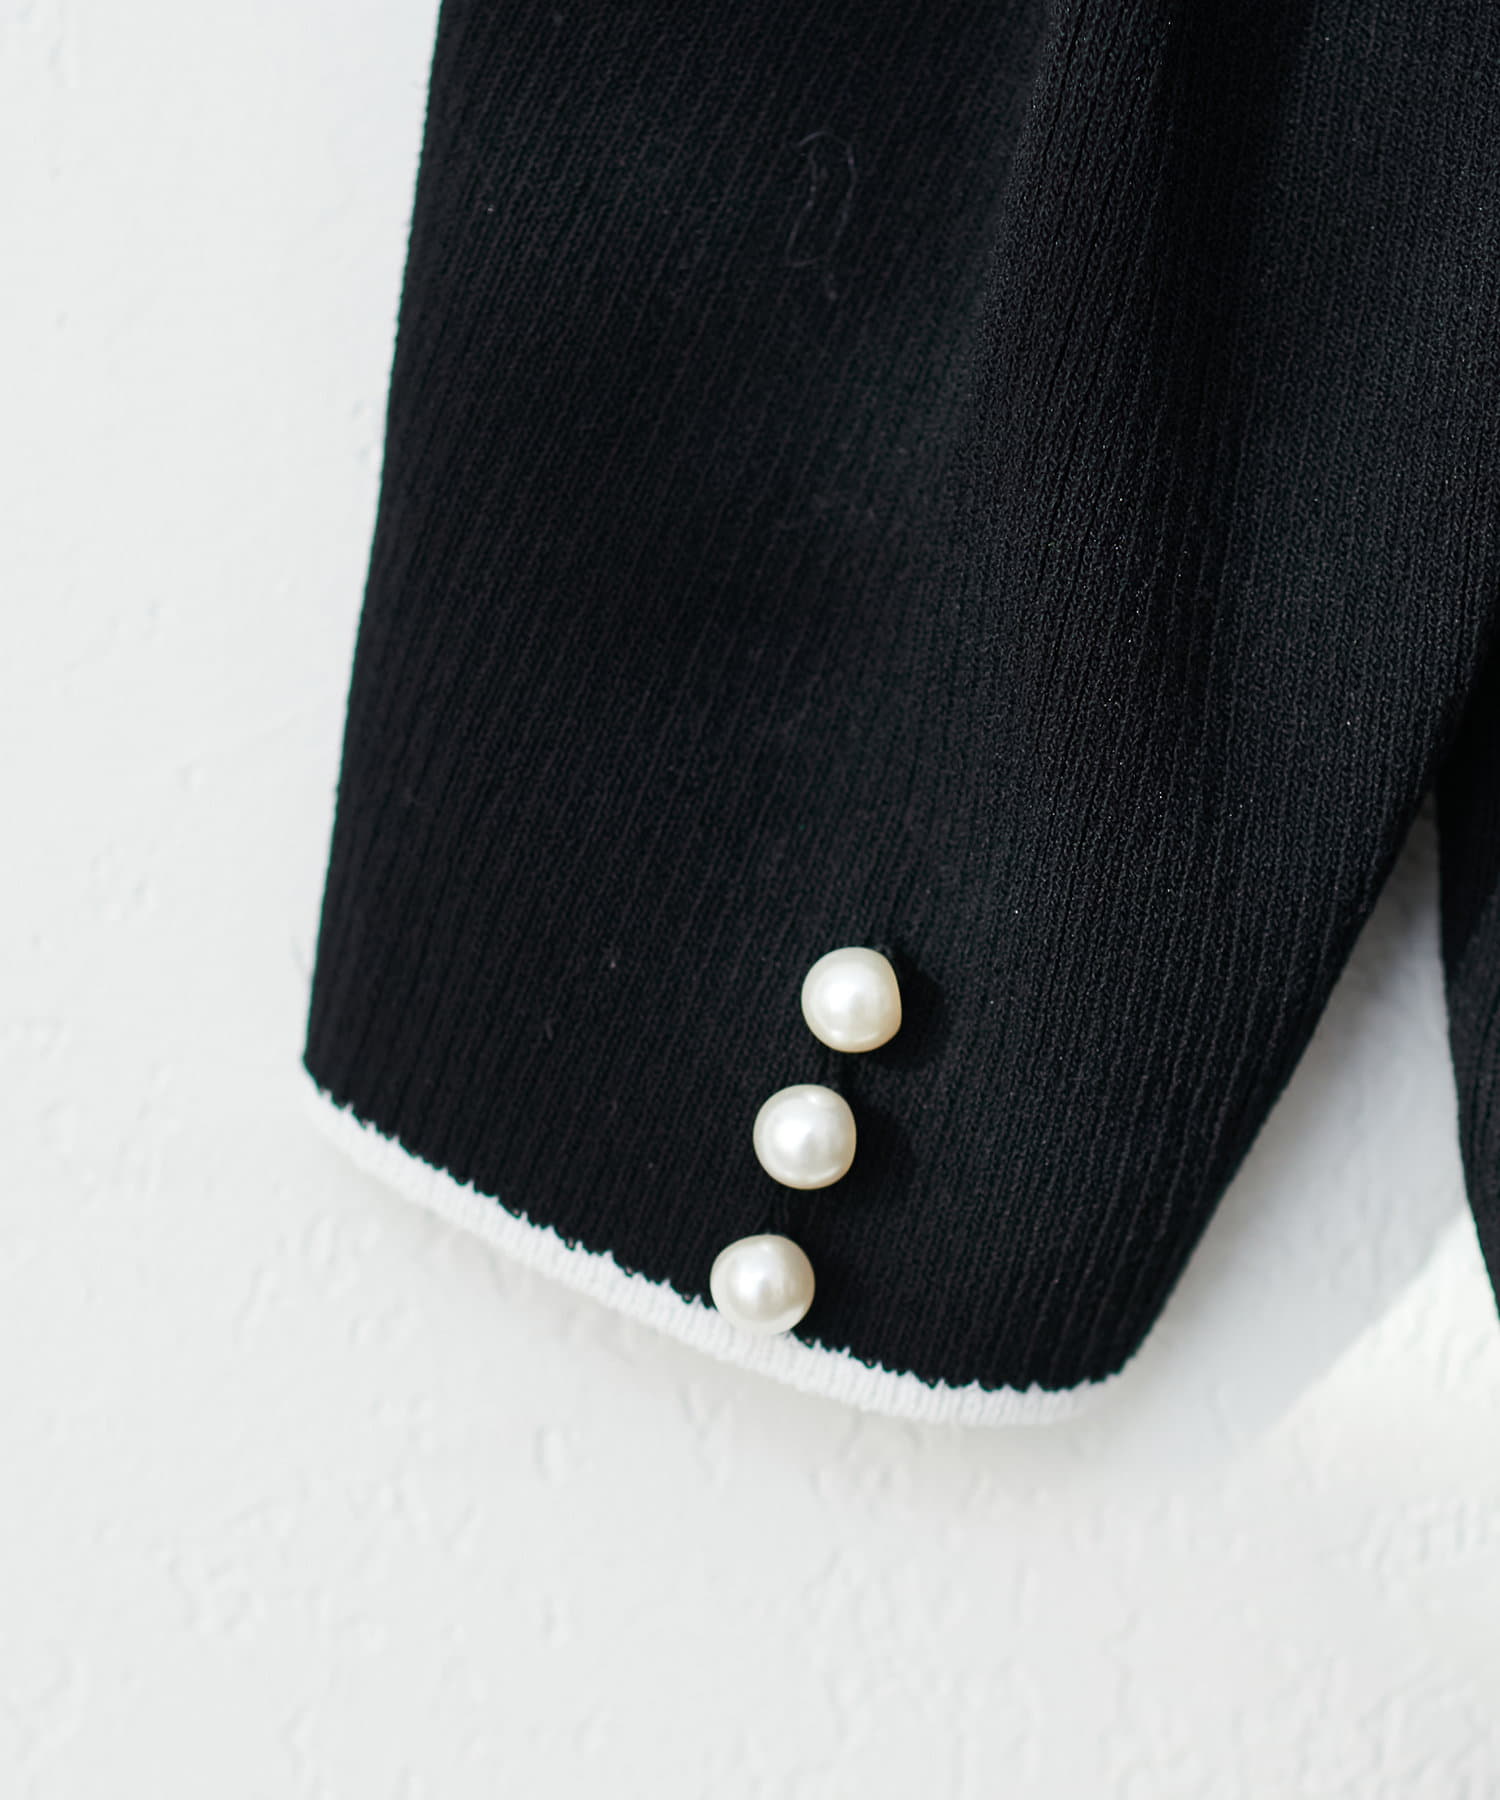 natural couture(ナチュラルクチュール) 【WEB限定】配色衿つき6分袖ニット